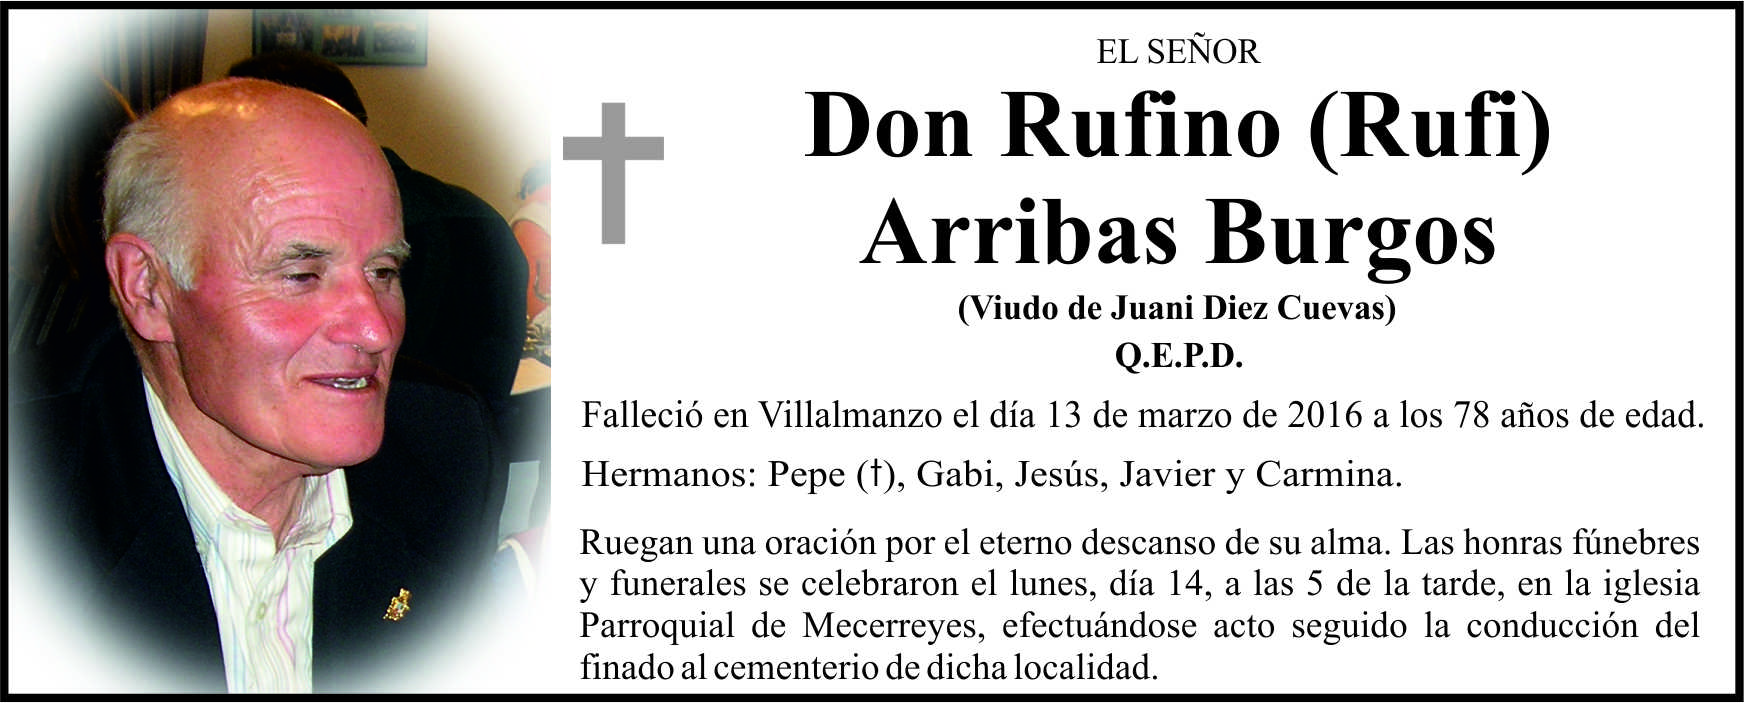 Esquela de Rufi Arribas Burgos, falleció el 13 de marzo de 2016, a los 78 años